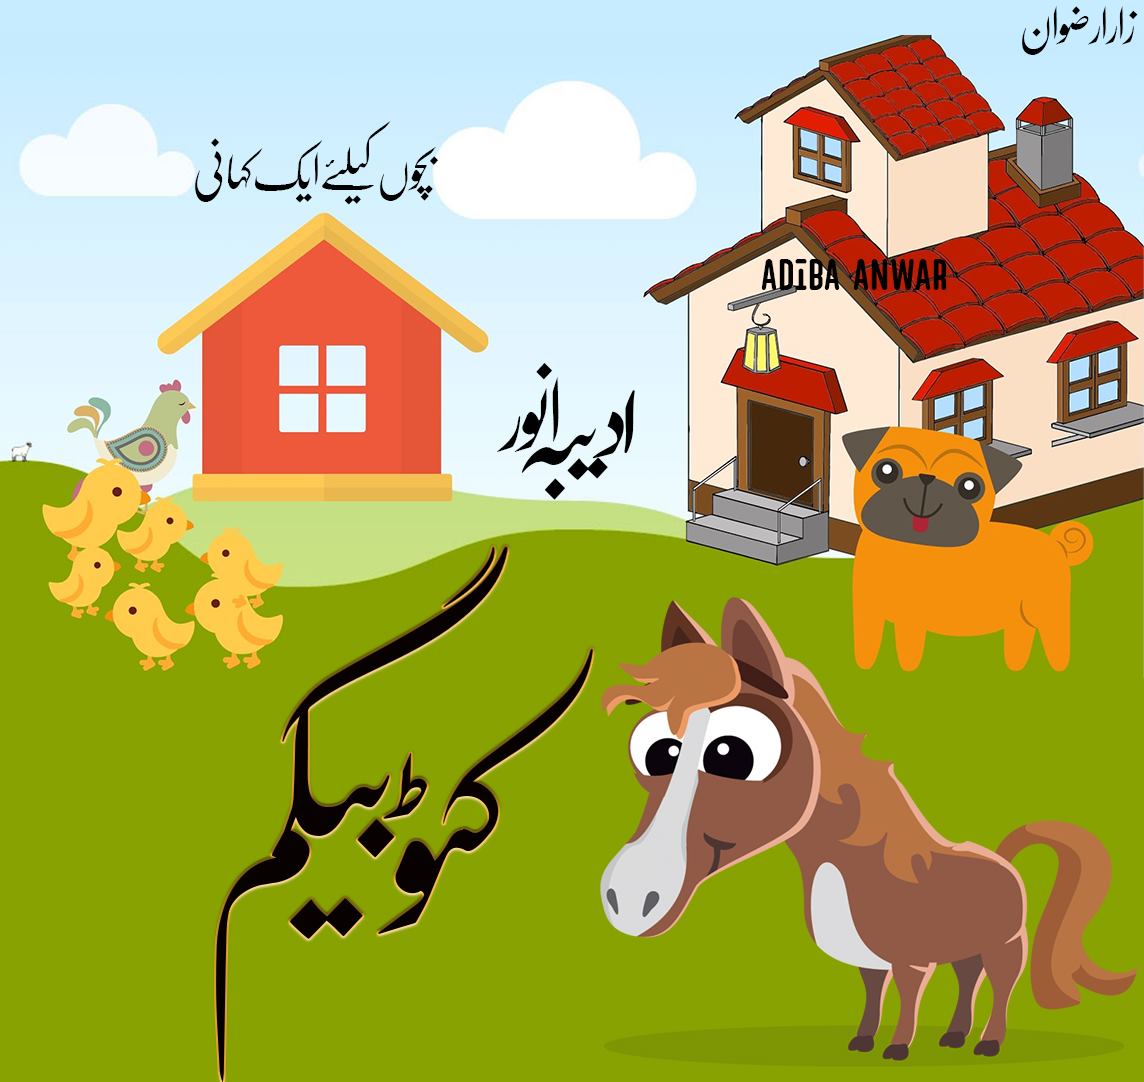 Urdu stories for children free